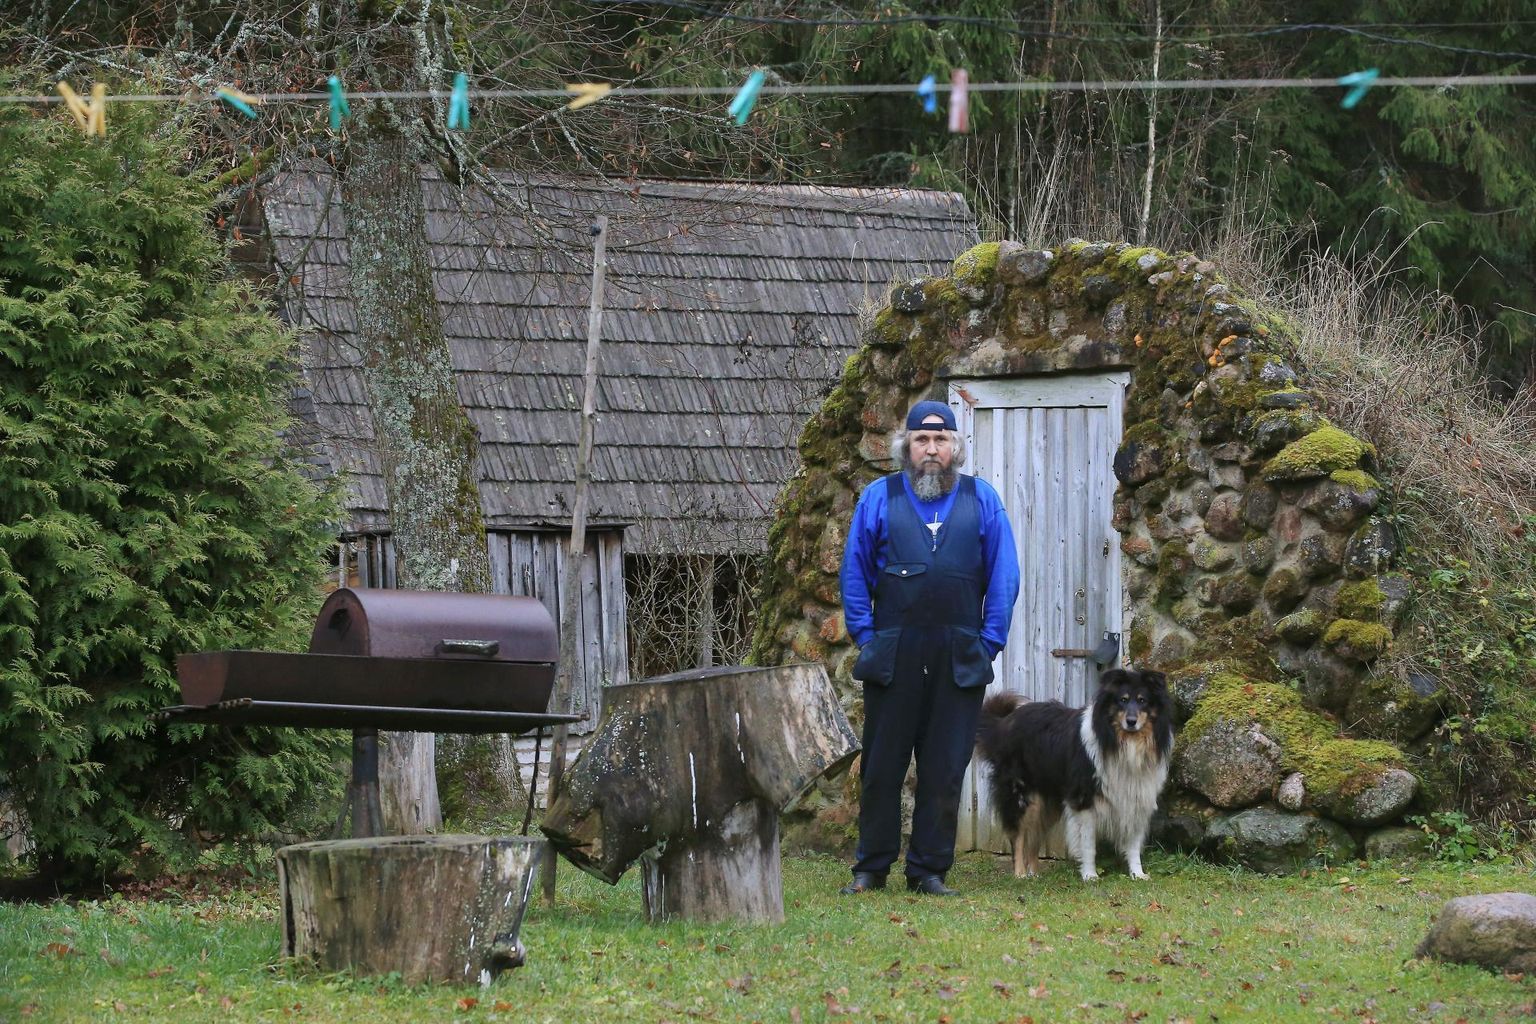 Хейки Пярн, владелец хутора Ала-Люкка в деревне Люкка, волость Рыуге, со своей собакой Реку перед погребом, который он построил своими руками. Скоро ему придется покинуть ферму.